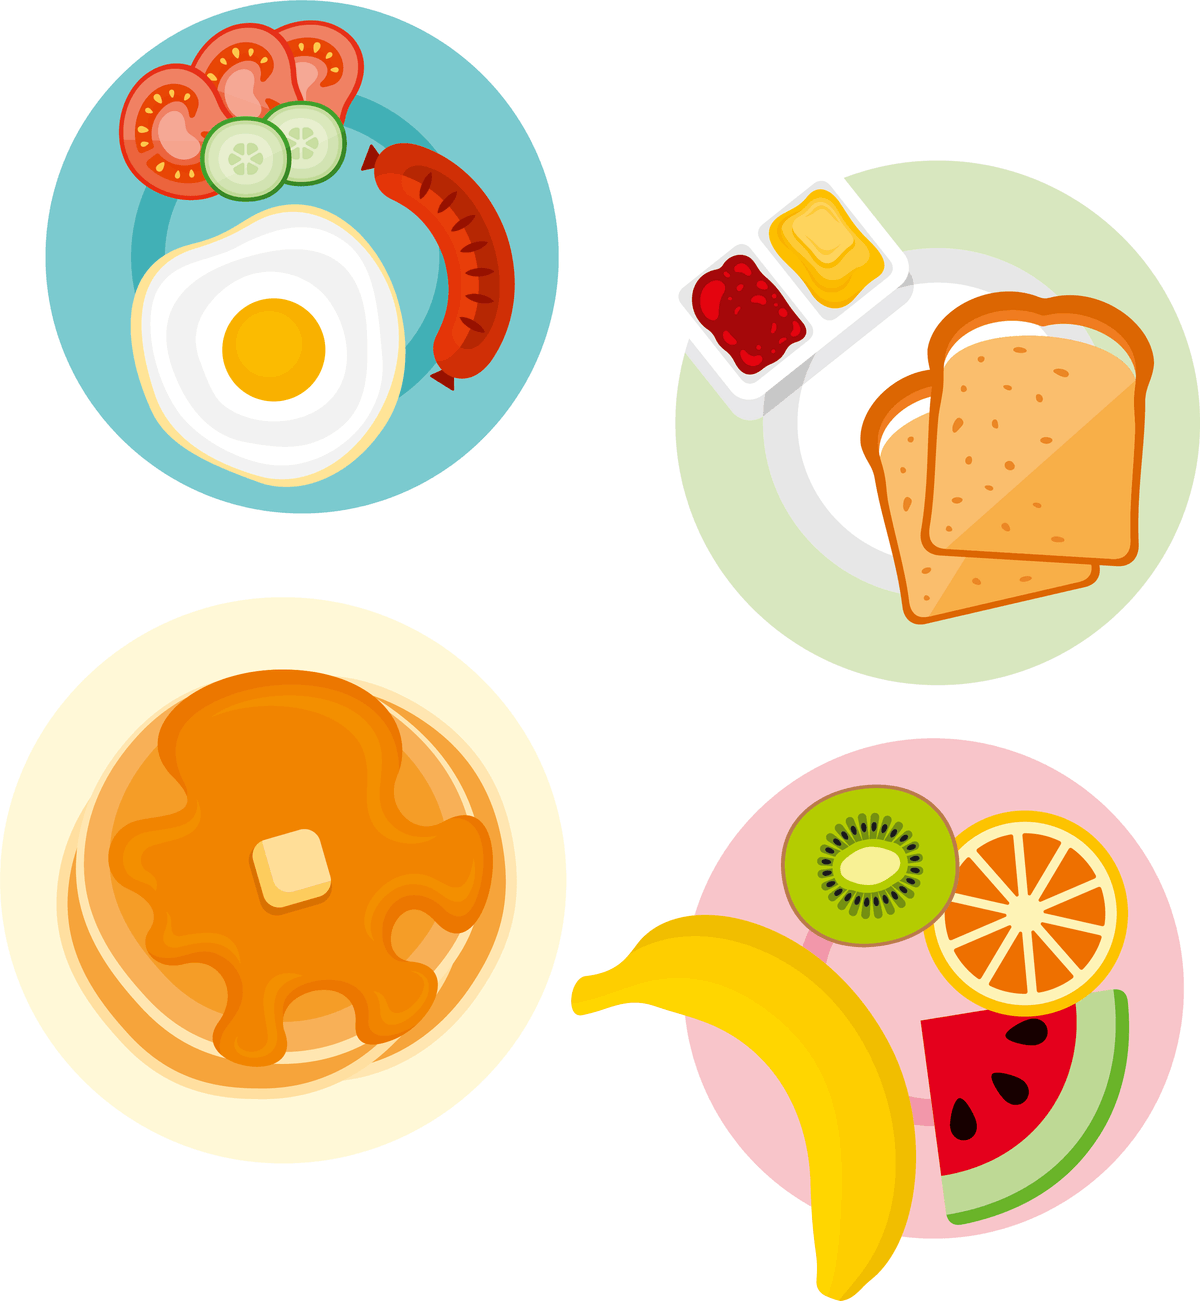 image de quatre petits déjeuner, des pancakes, oeuf, saucisse, toast et fruits.